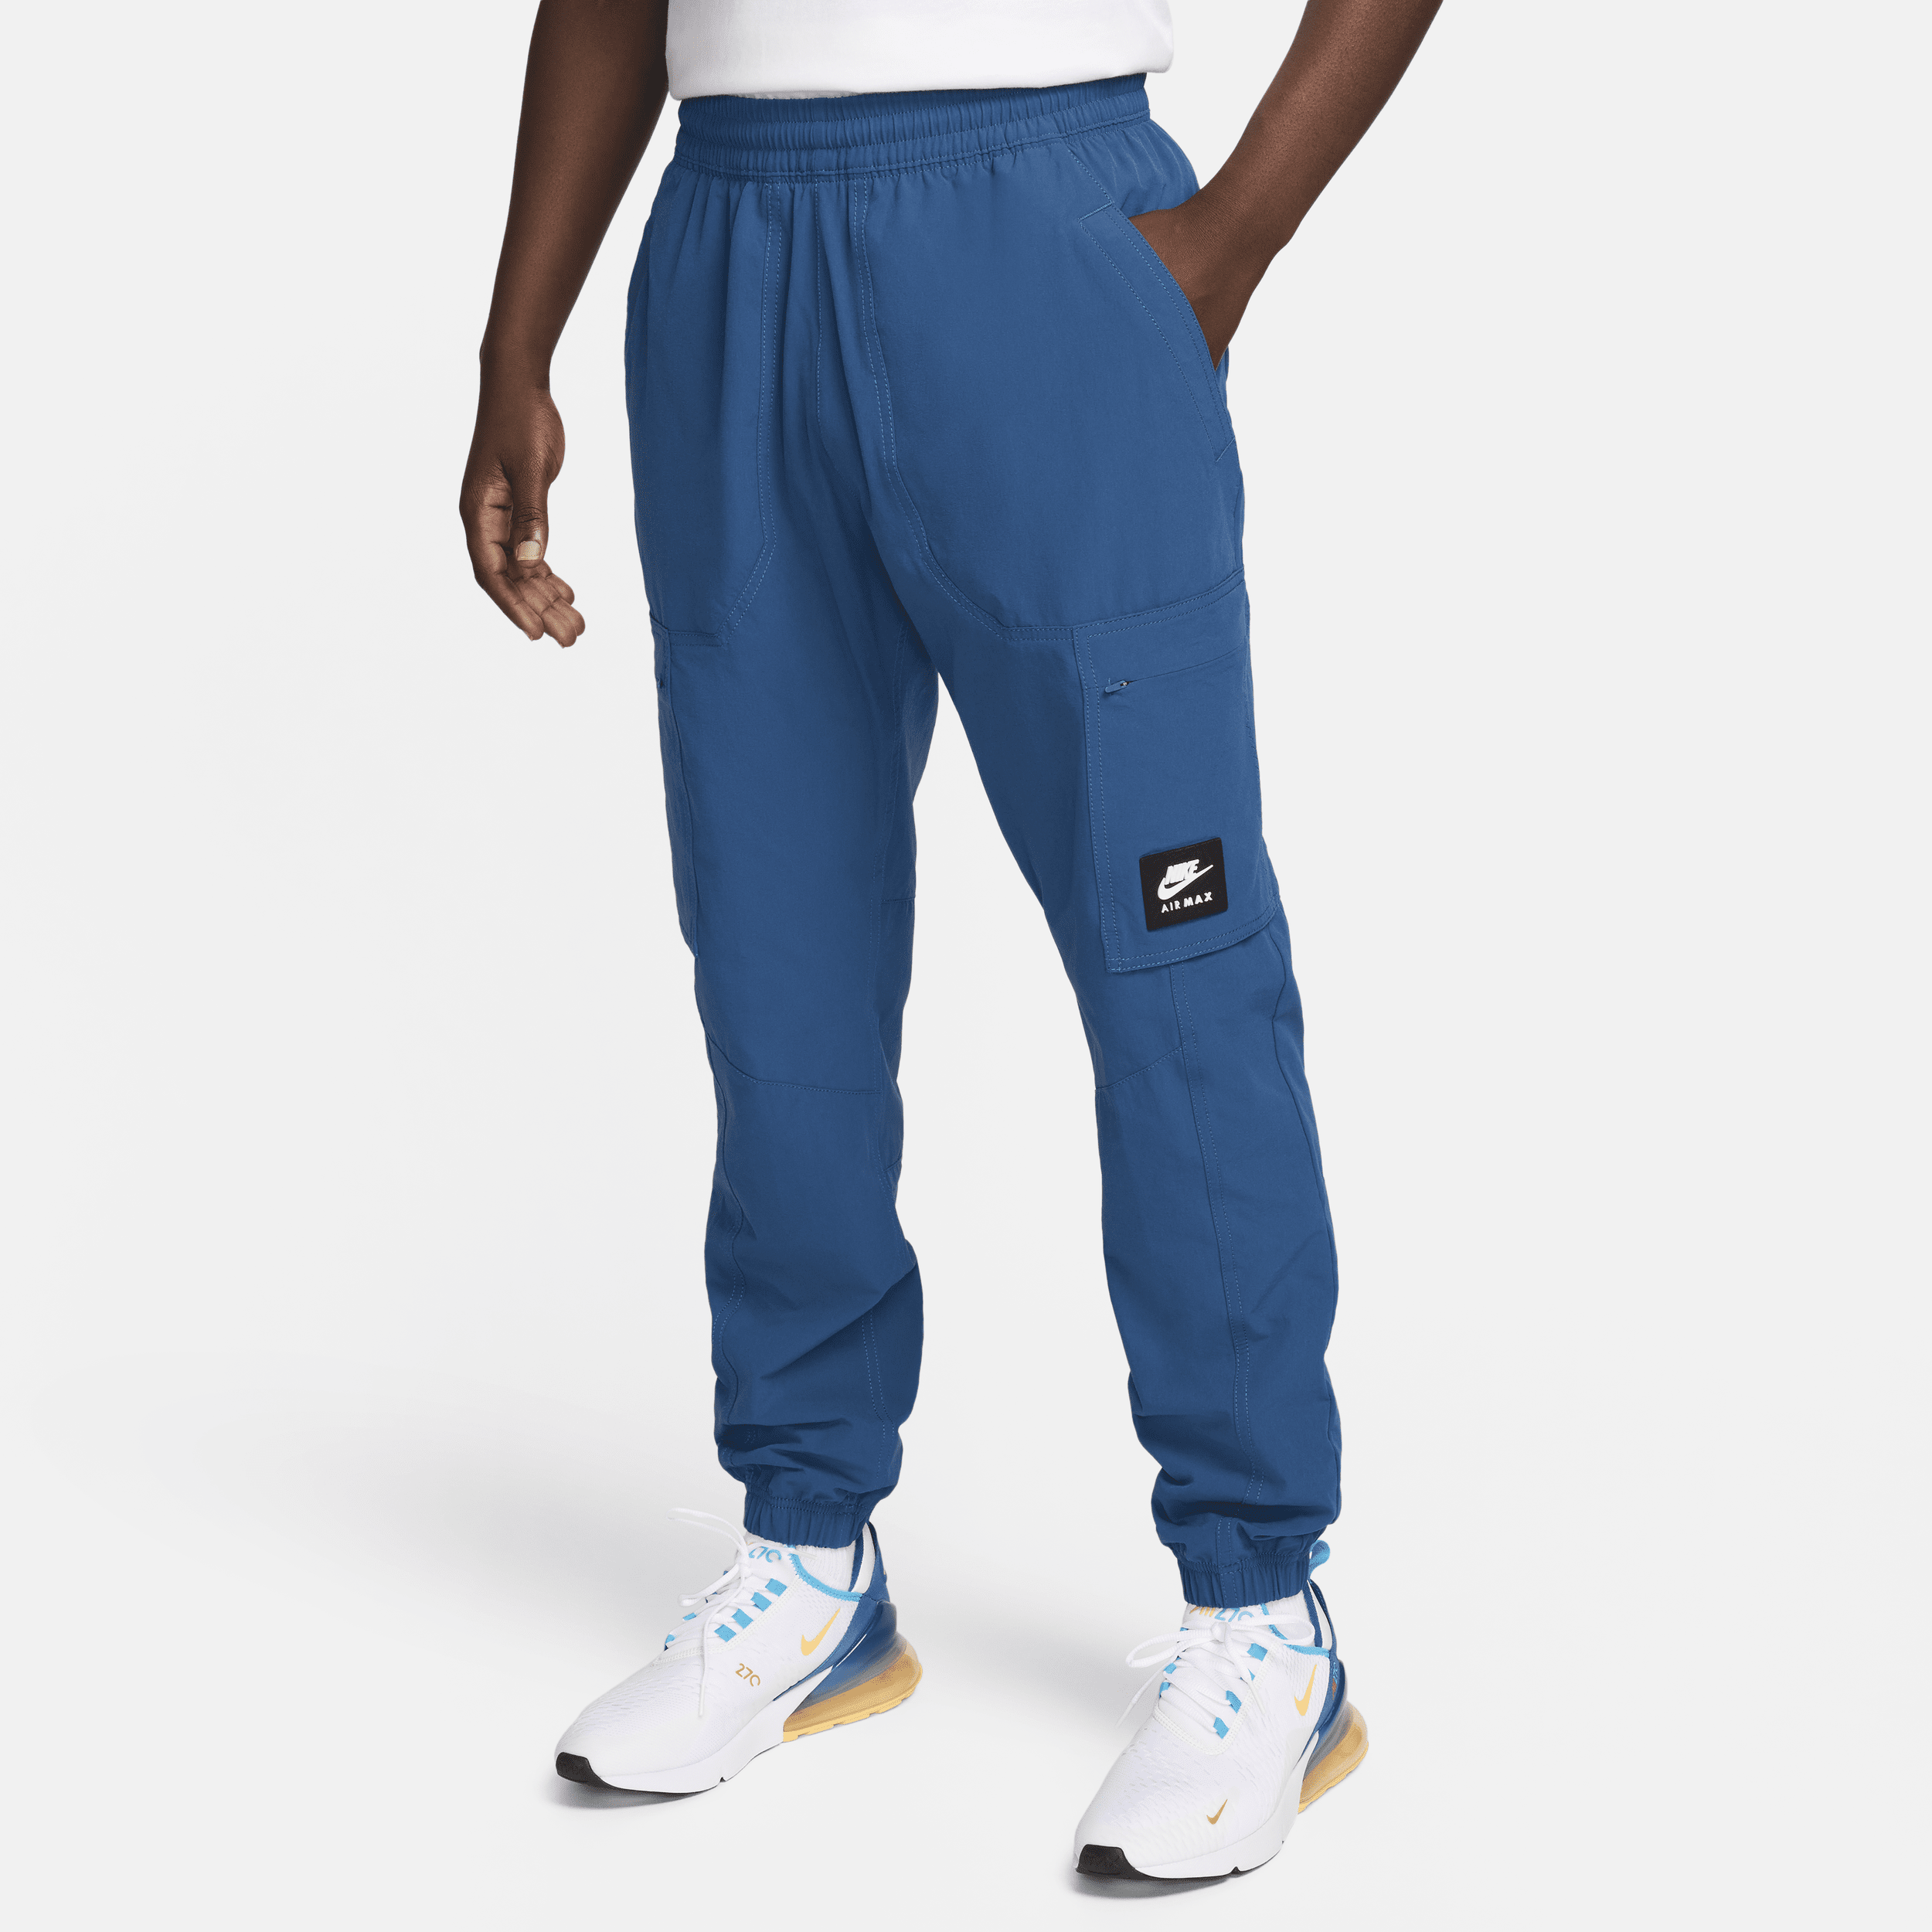 Pantaloni cargo in tessuto Nike Air Max - Uomo - Blu